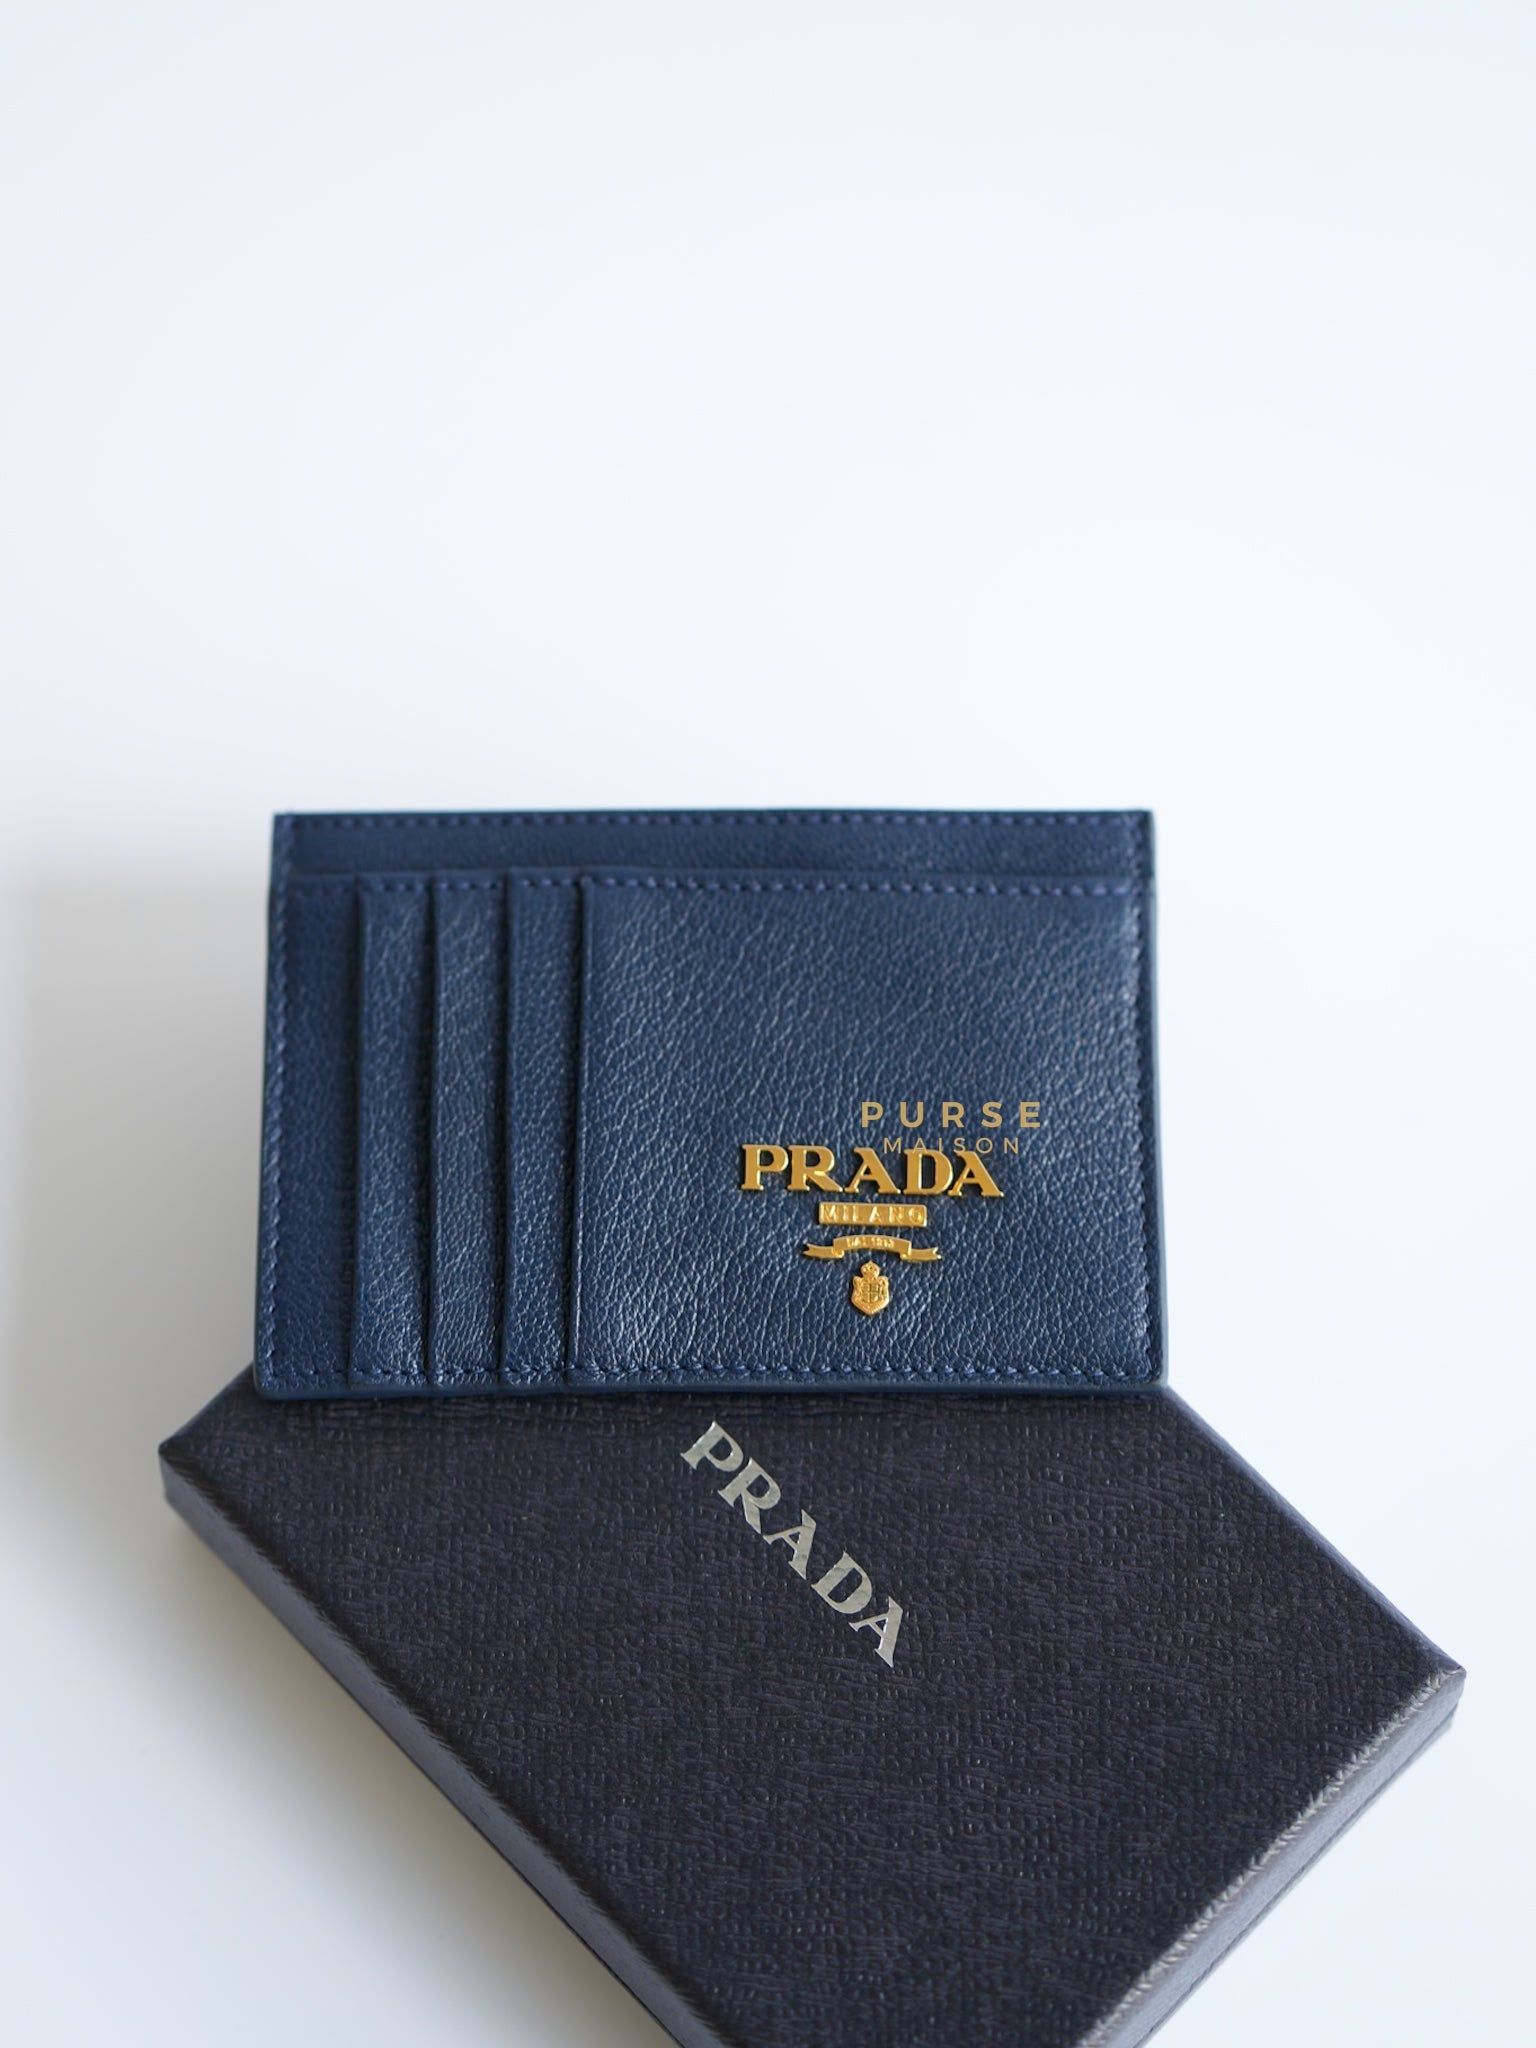 1MC053 Portacarte Card Holder (Navy Blue) | Purse Maison Luxury Bags Shop